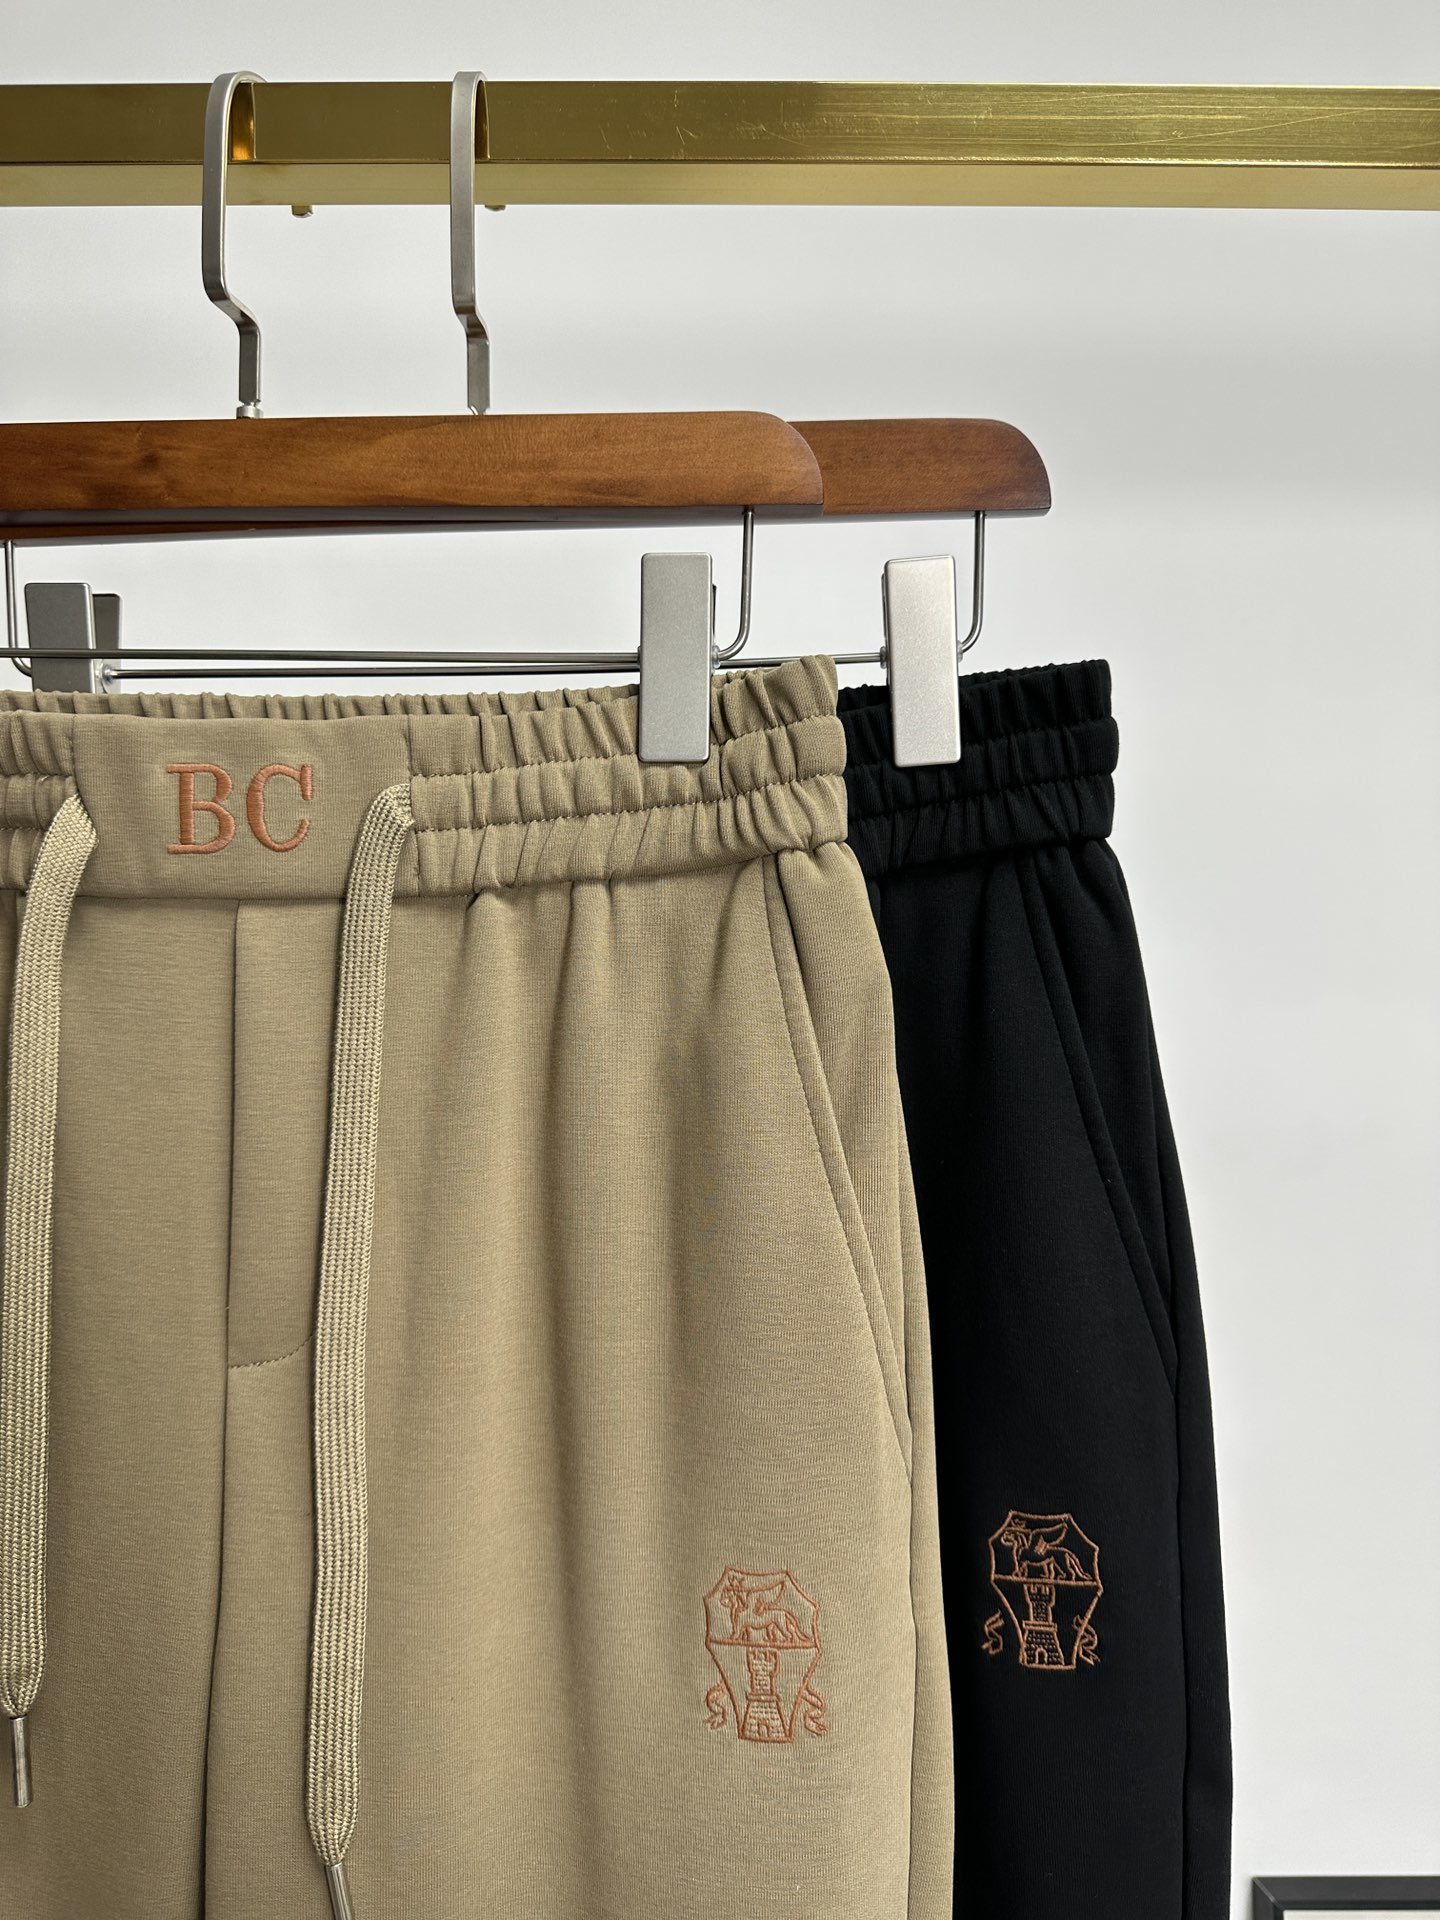 欧货BC家-24ss春夏新款进口纯棉质地复合面料再见基础款帅气卫裤.....一线时尚品牌出色独到的设计以